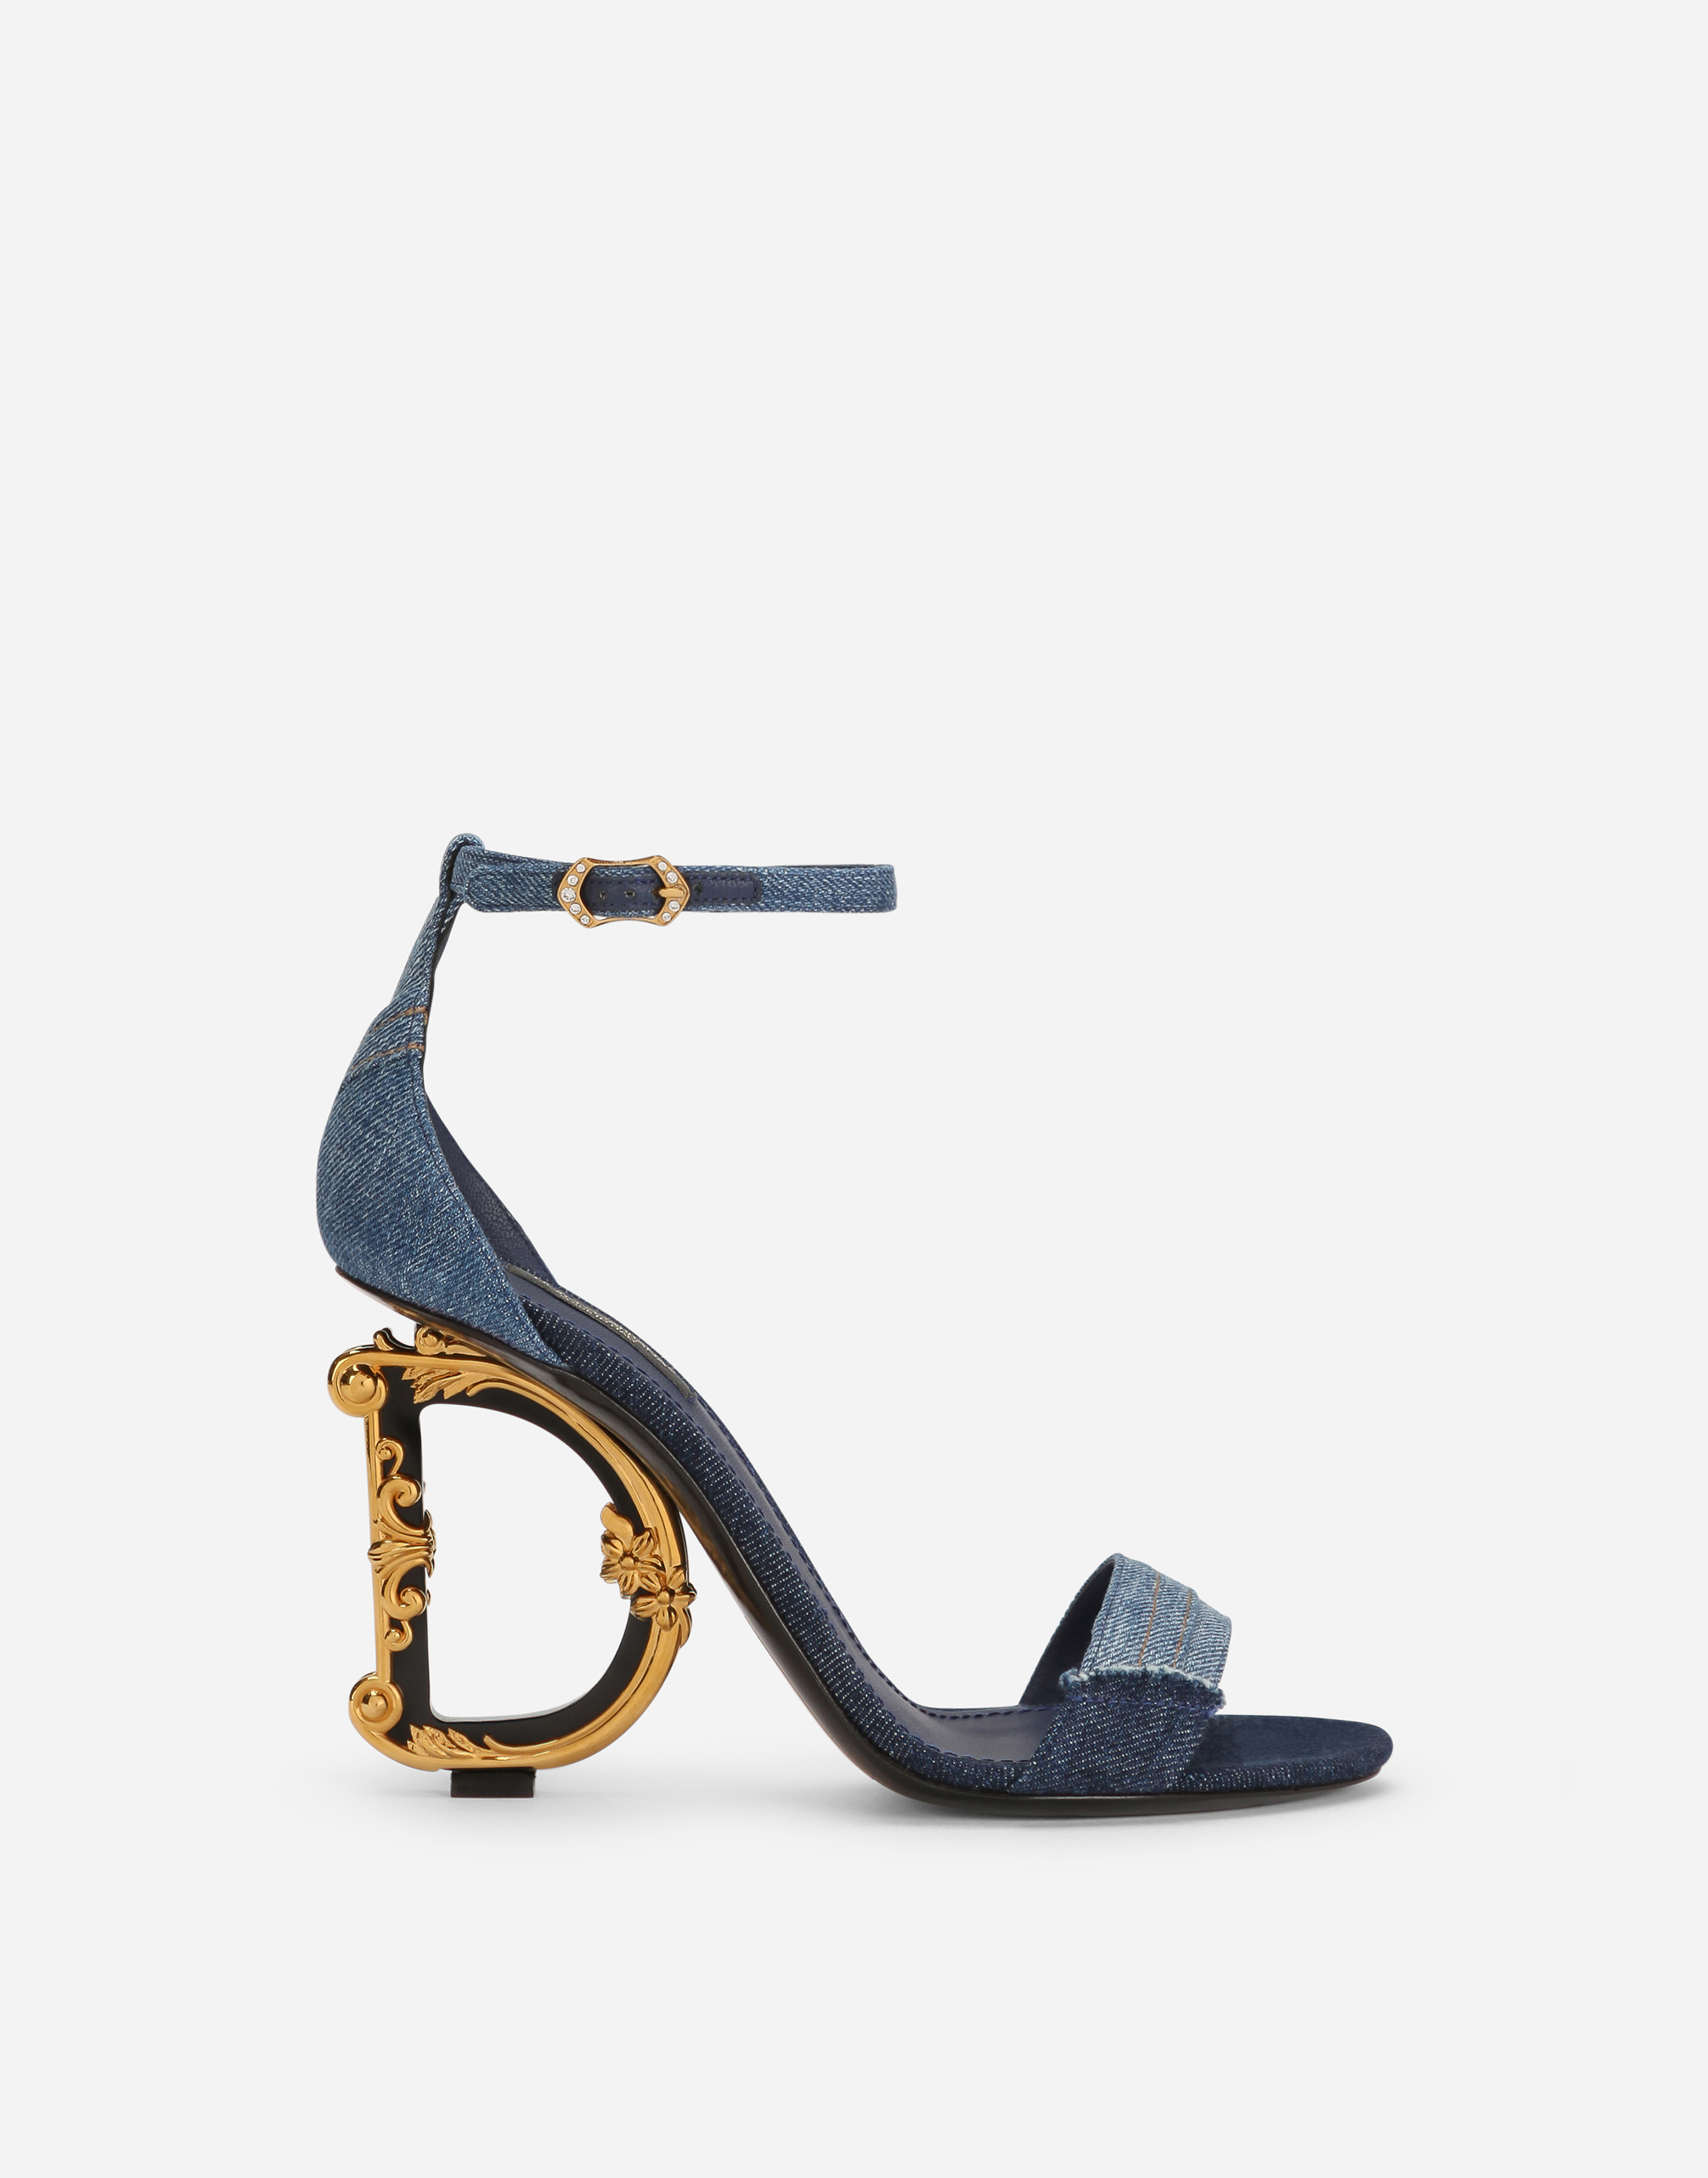 Patchwork denim sandals with baroque DG heel in Denim